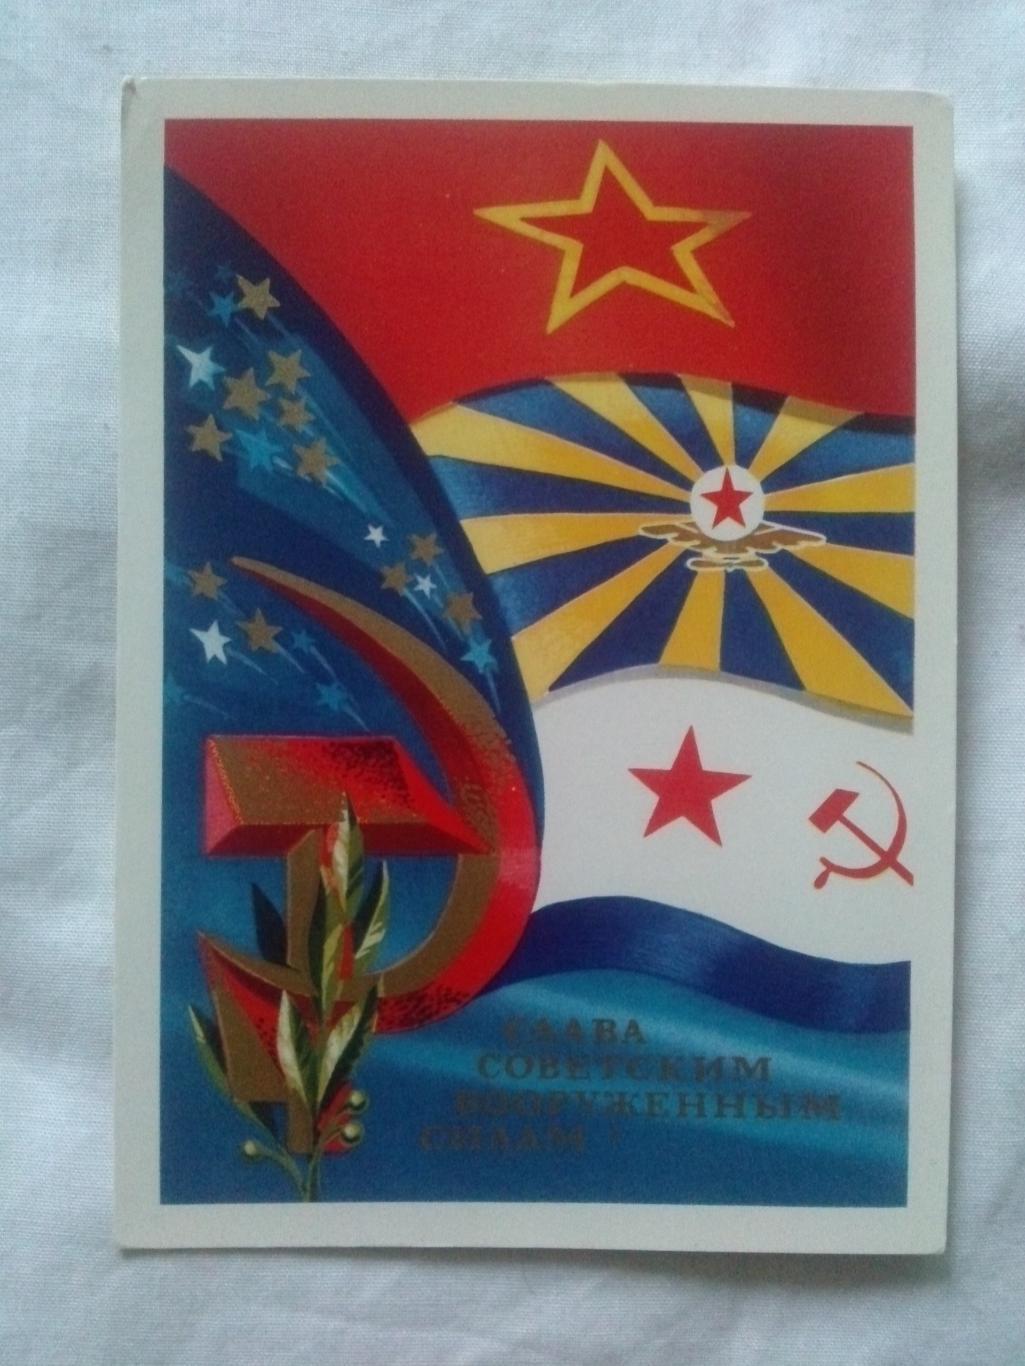 Слава Советским вооруженным силам ! 1973 г. (почтовая с маркой Авиапочта) Армия